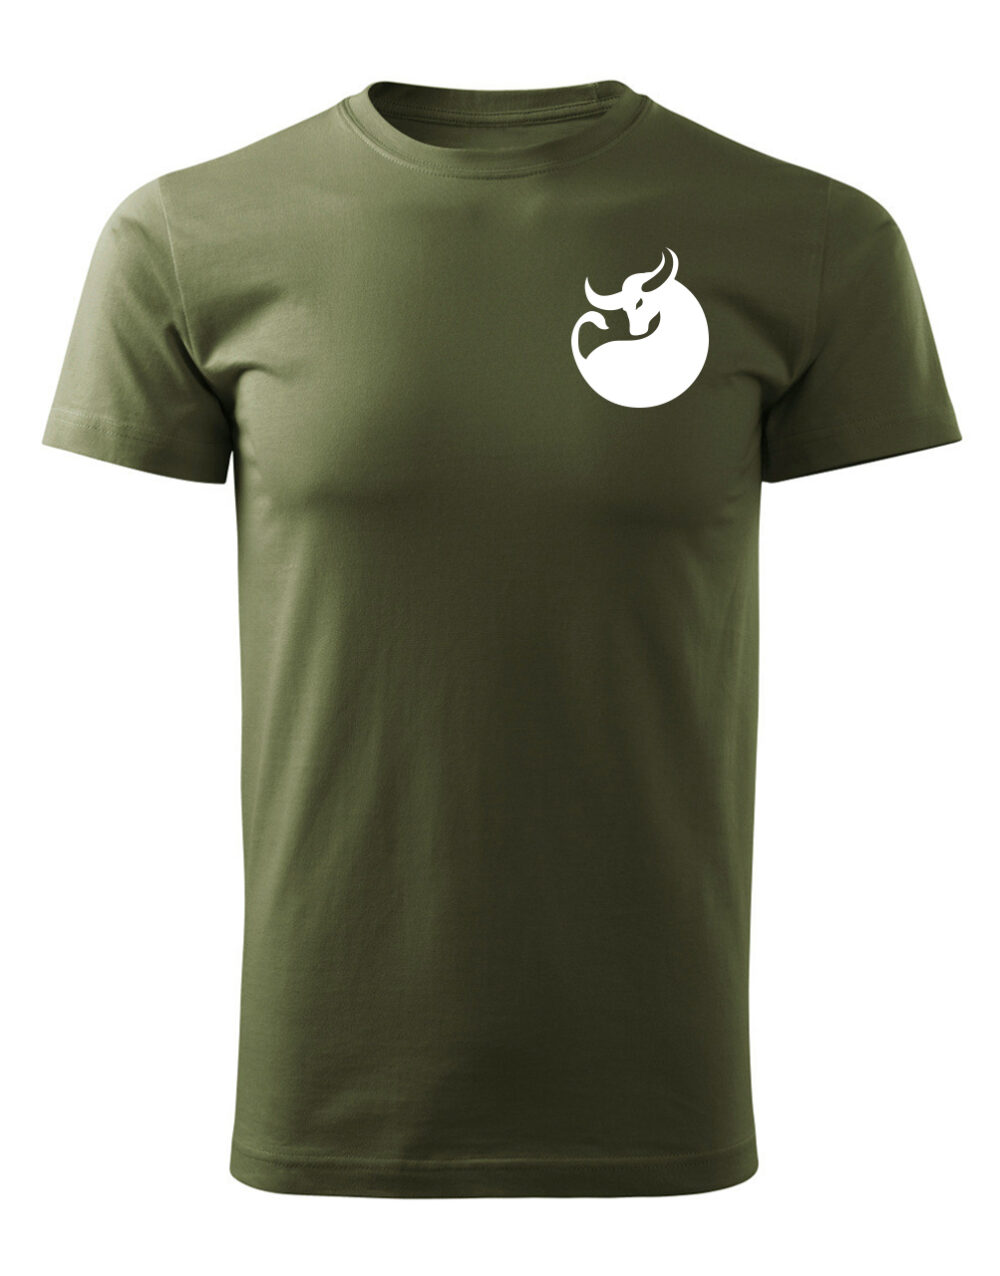 Pánské tričko s potiskem Býk vojenská zelená